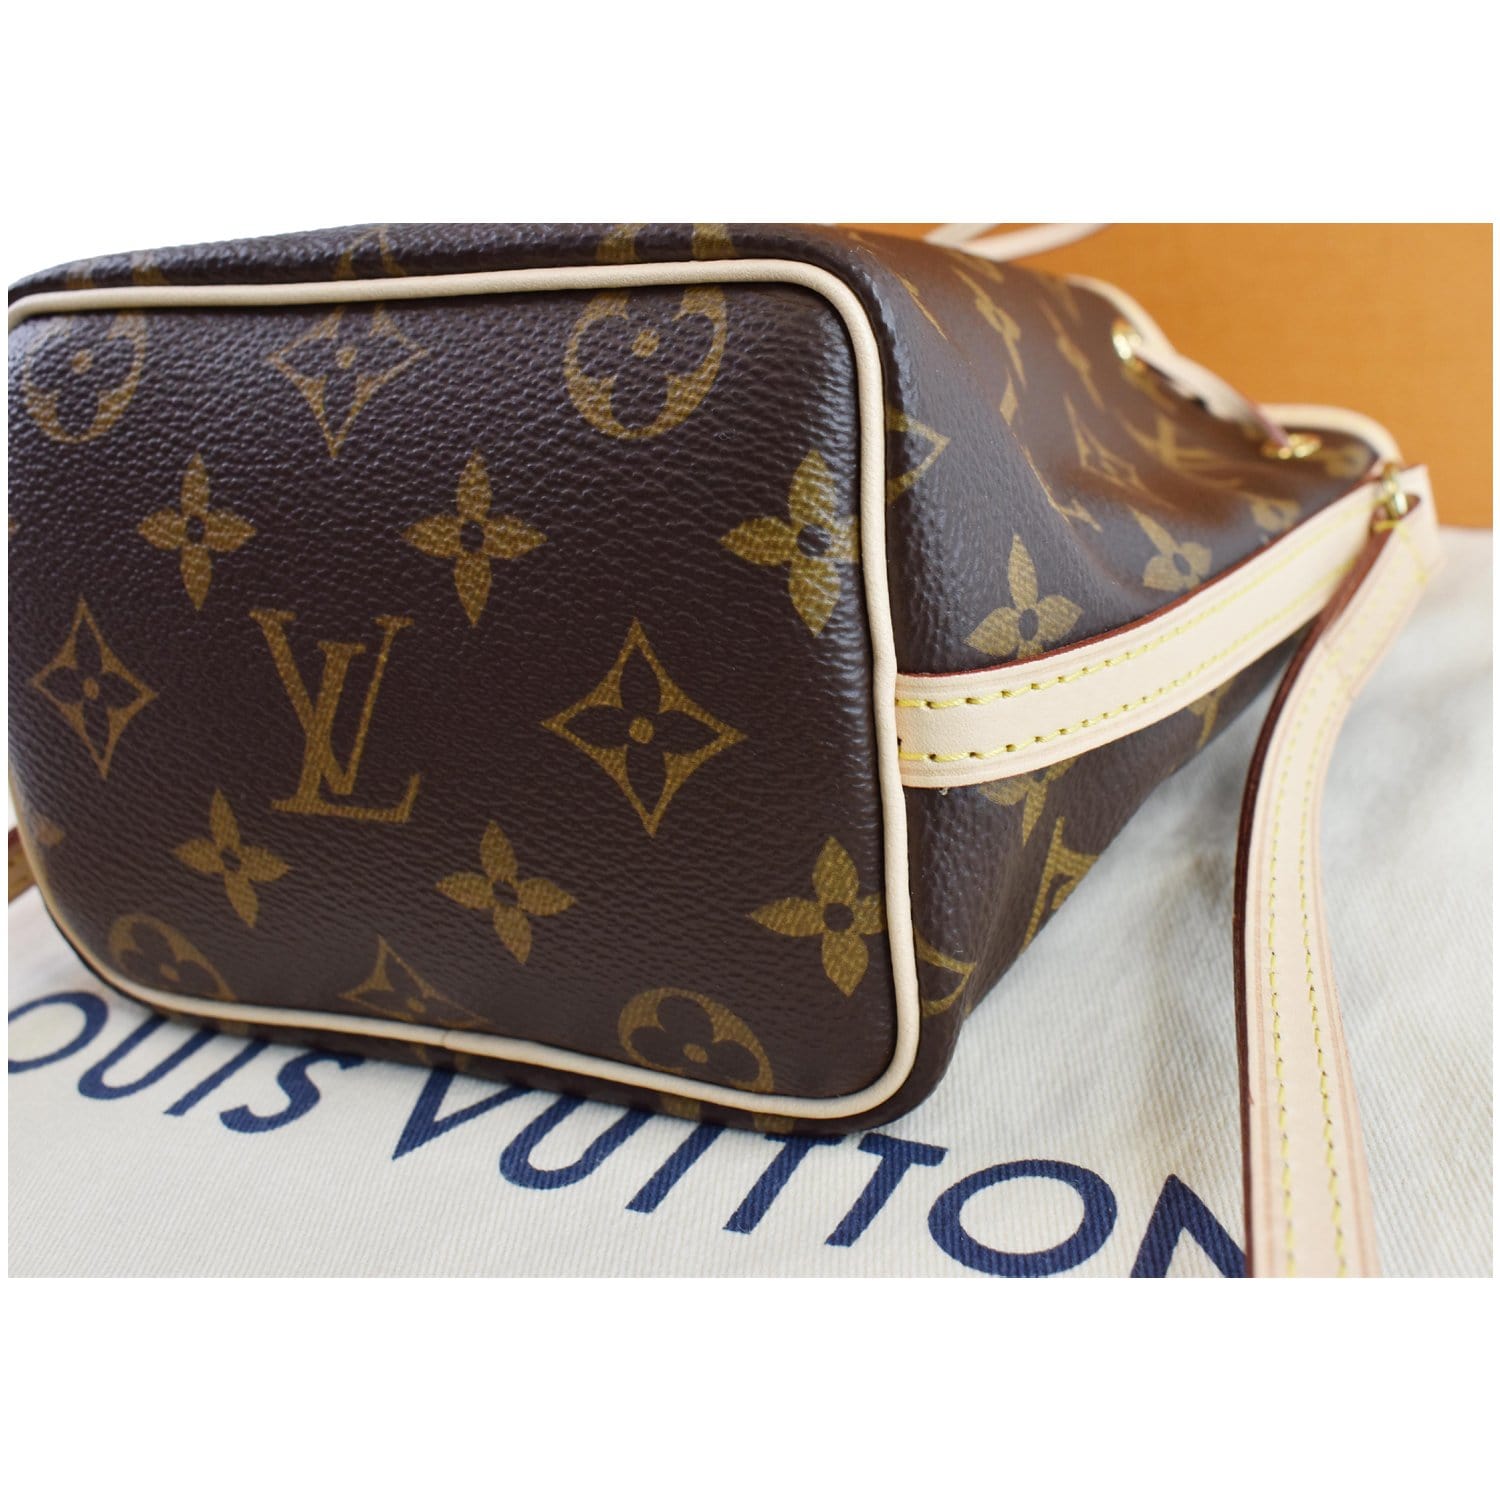 Louis Vuitton, Bags, Louis Vuitton Nano Noe Monogram Bag